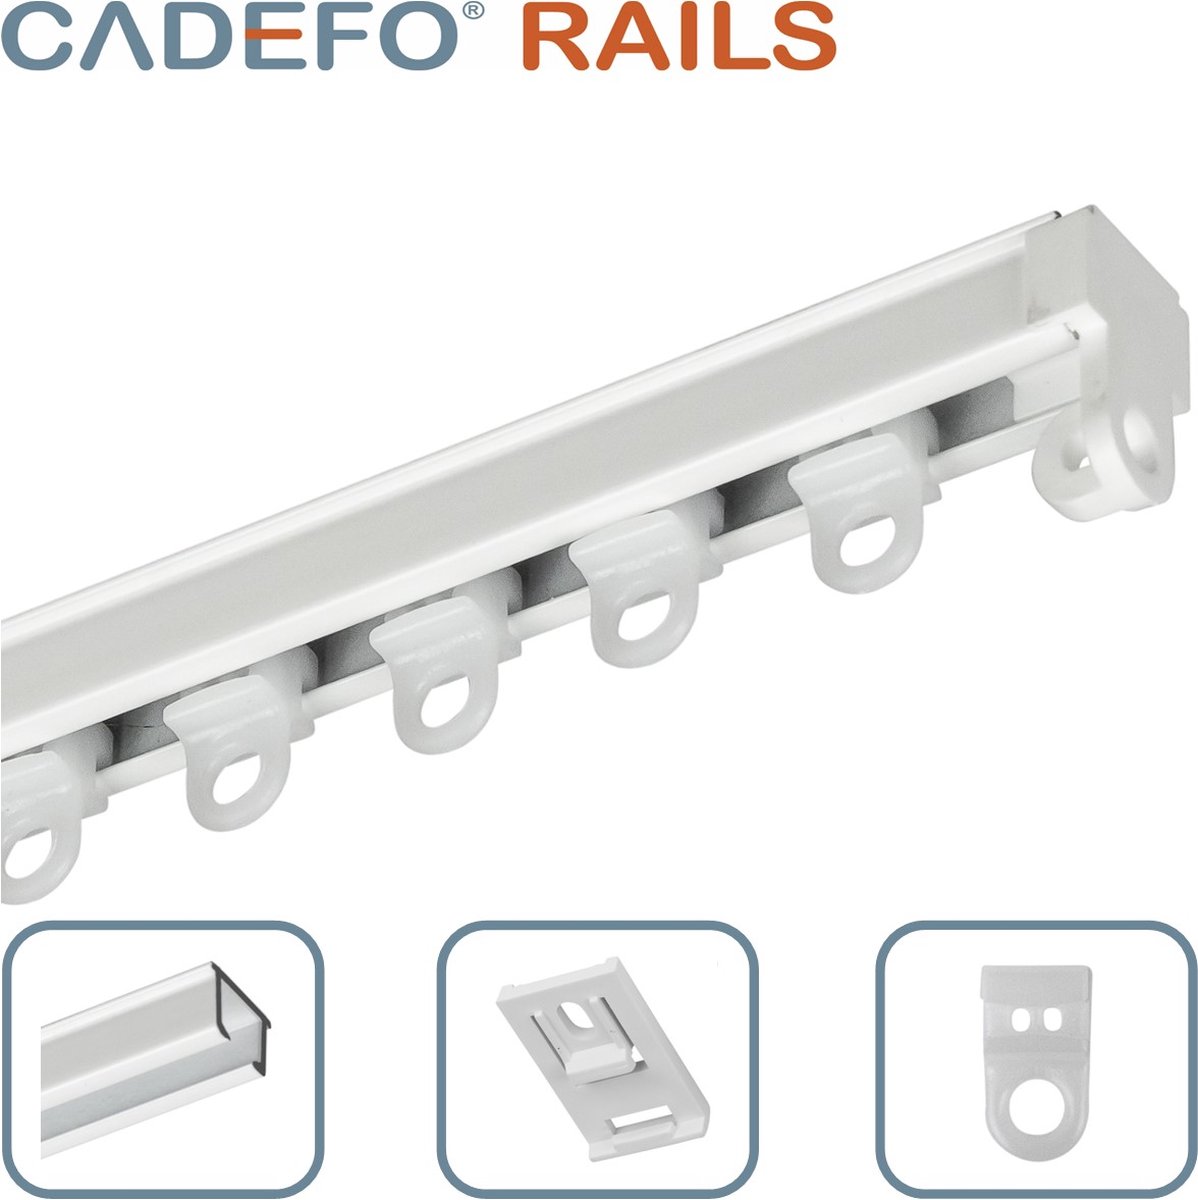 CADEFO RAILS (401 - 450 cm) Gordijnrails - Compleet op maat! - UIT 1 STUK - Leverbaar tot 6 meter - Plafondbevestiging - Lengte 421 cm